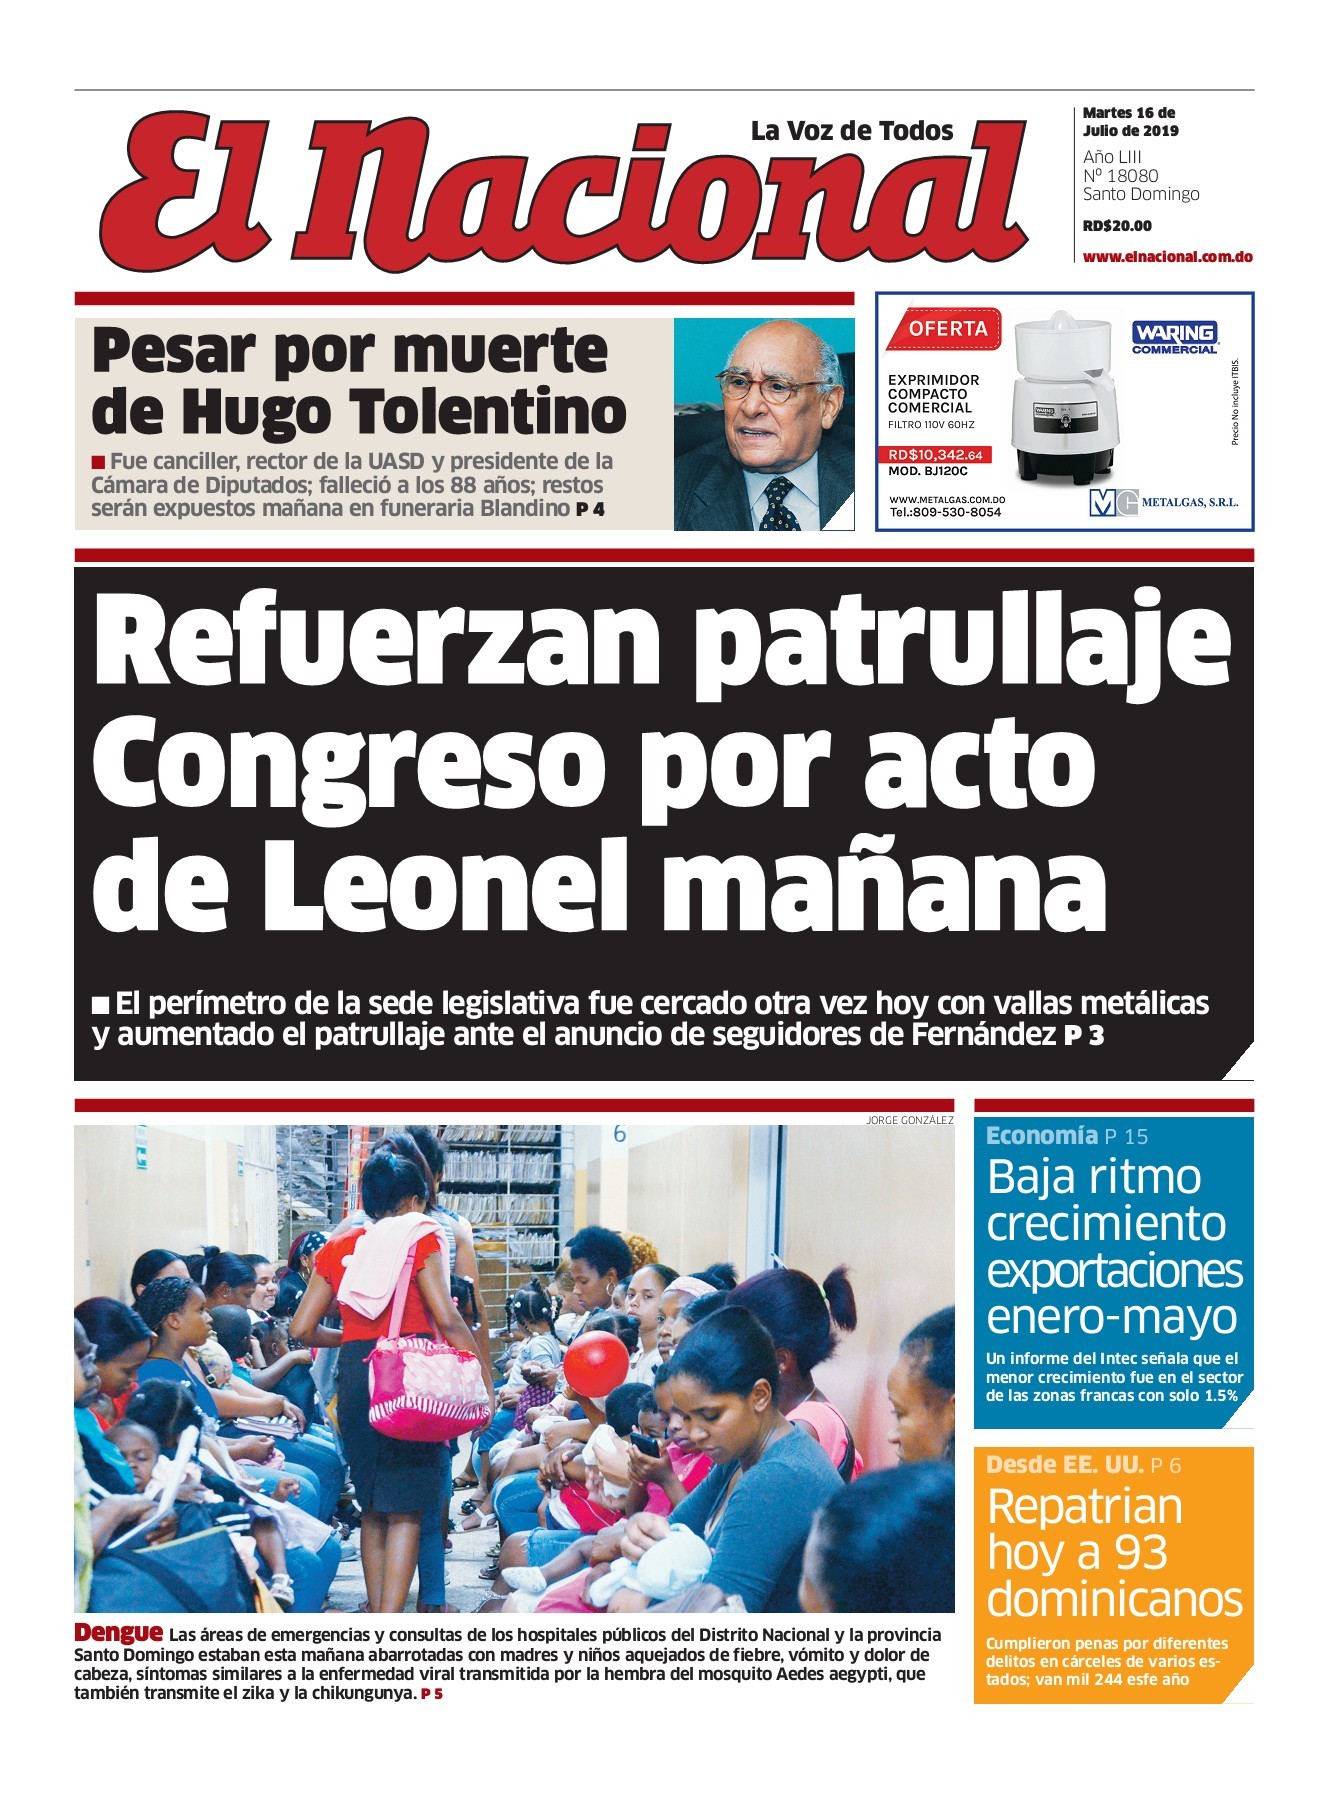 Portada Periódico El Nacional, Martes 16 de Julio, 2019